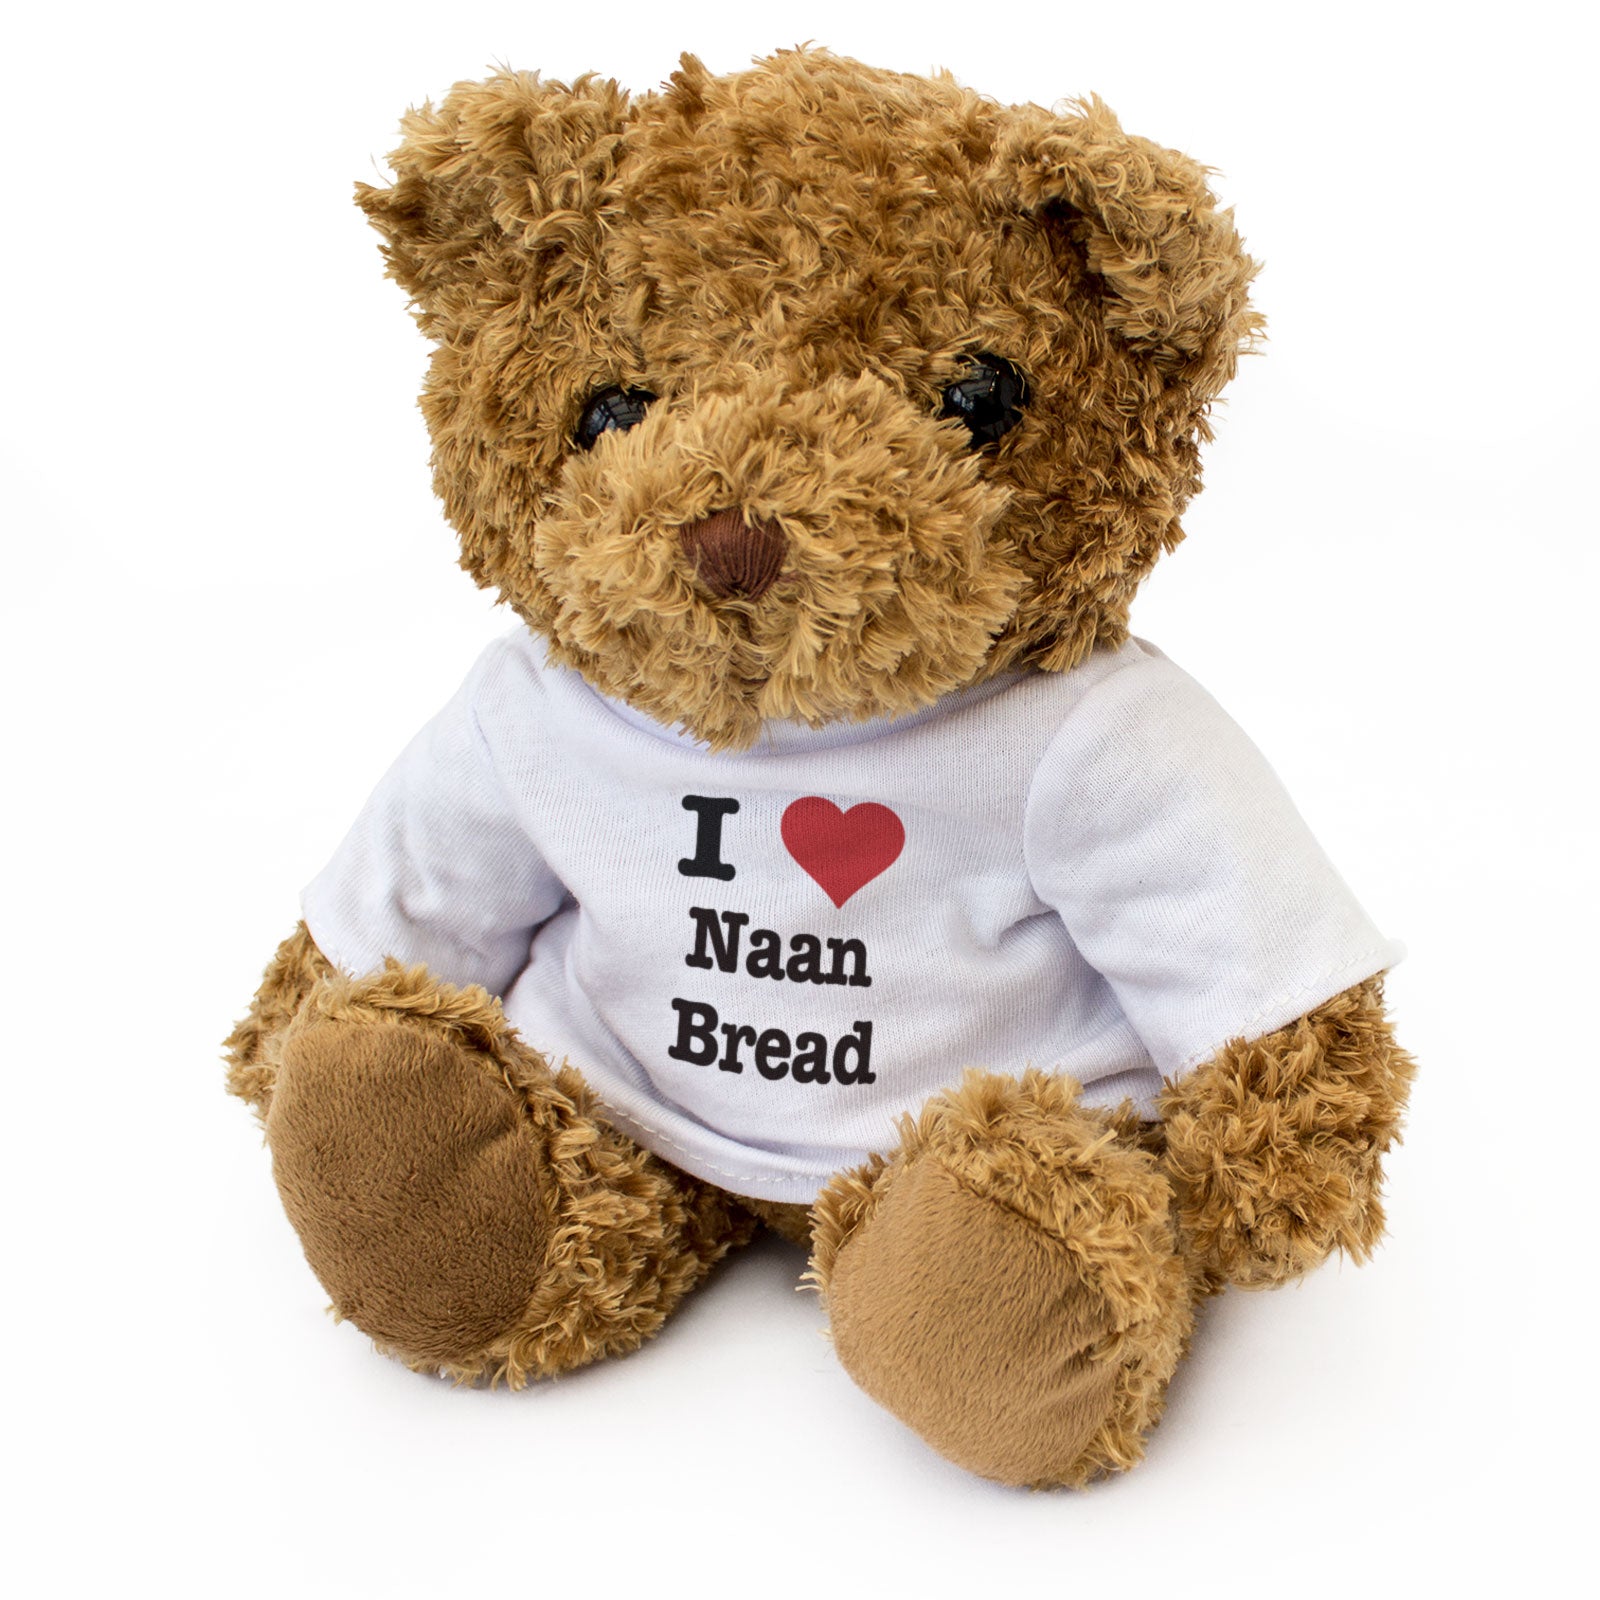 I Love Naan Bread - Teddy Bear